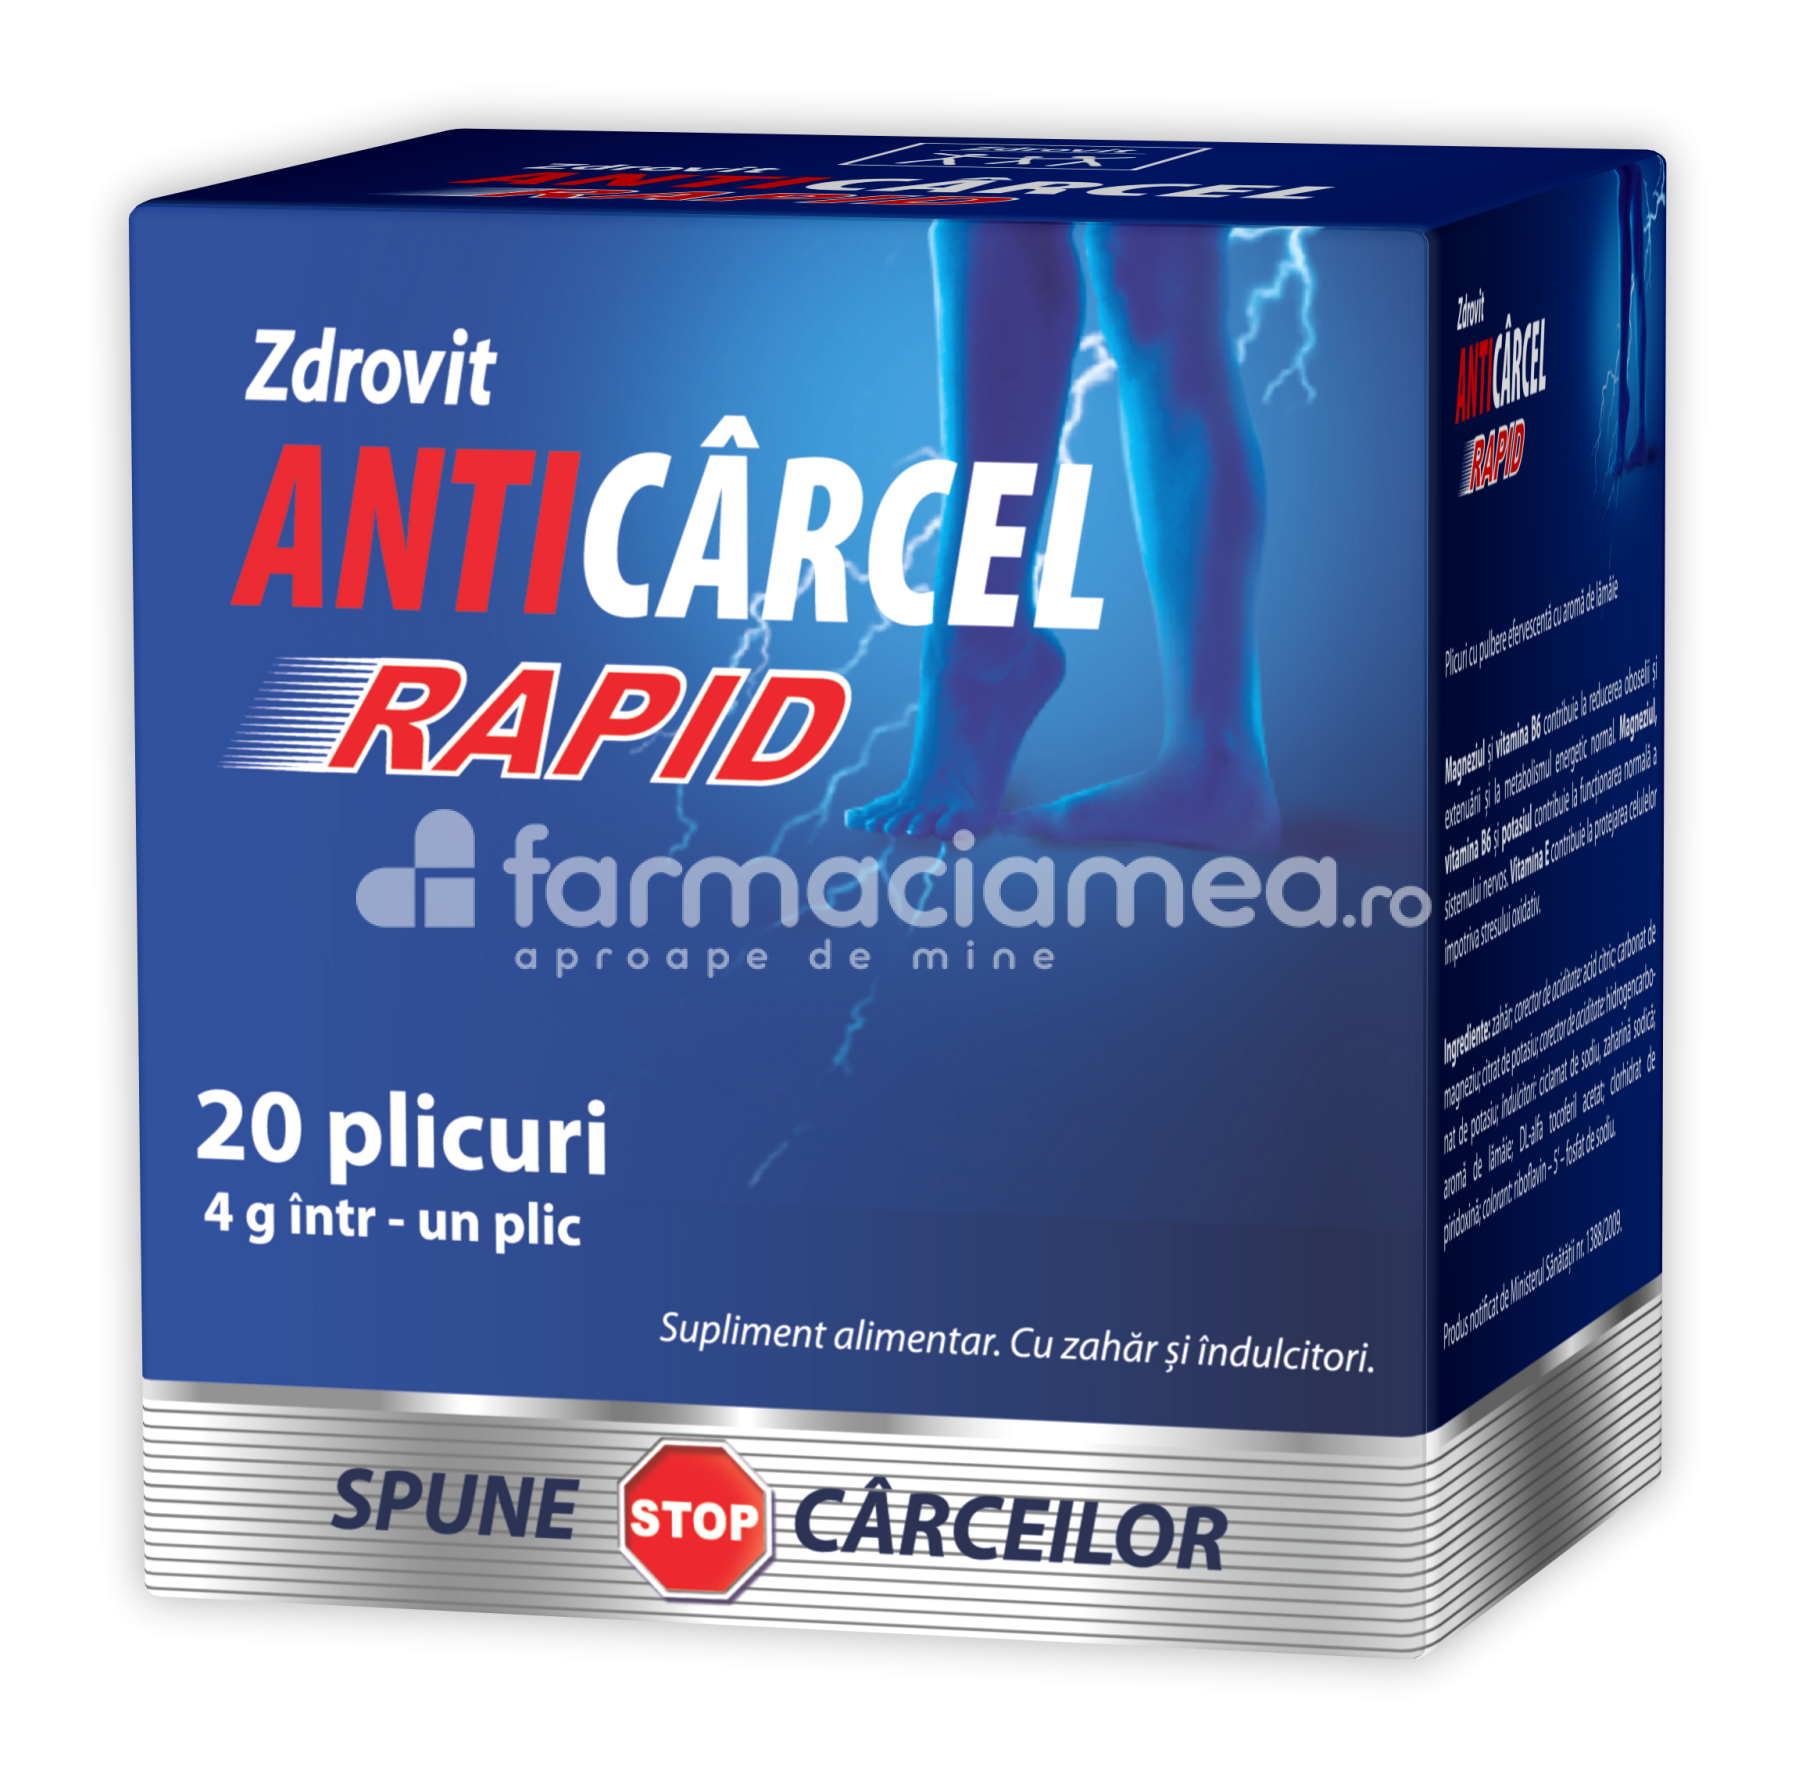 Anticârcel - Anticarcel Rapid combate crampele musculare, 20 de plicuri, Zdrovit, farmaciamea.ro